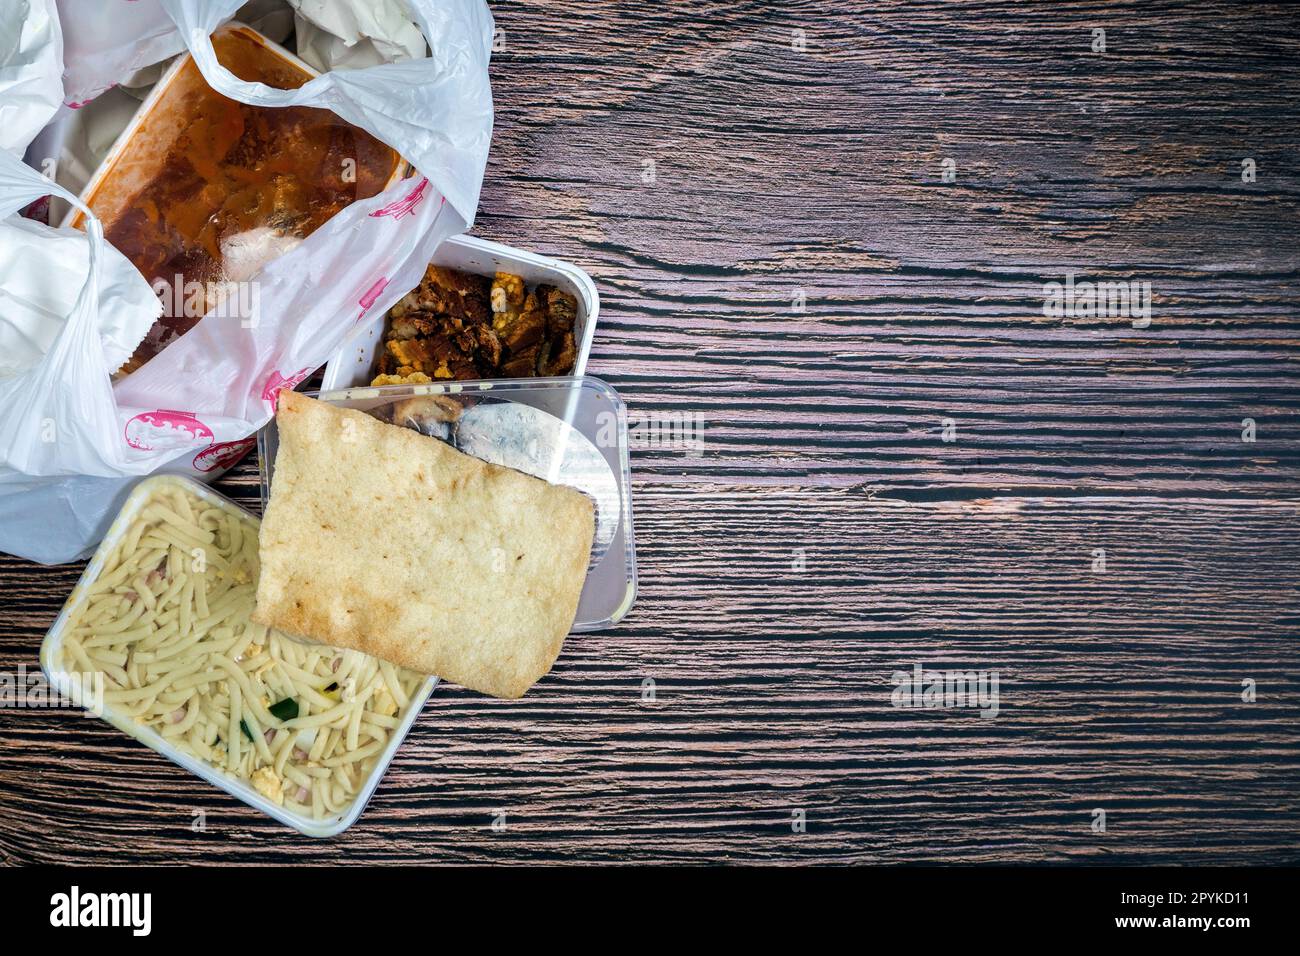 Sélection de plats chinois à emporter dans un sac en plastique. Bami, babi pangang, bœuf haché croustillant, poulet aigre-doux, vue de dessus krupuk sur l'espace de copie de table en bois. Livraison de nourriture Banque D'Images